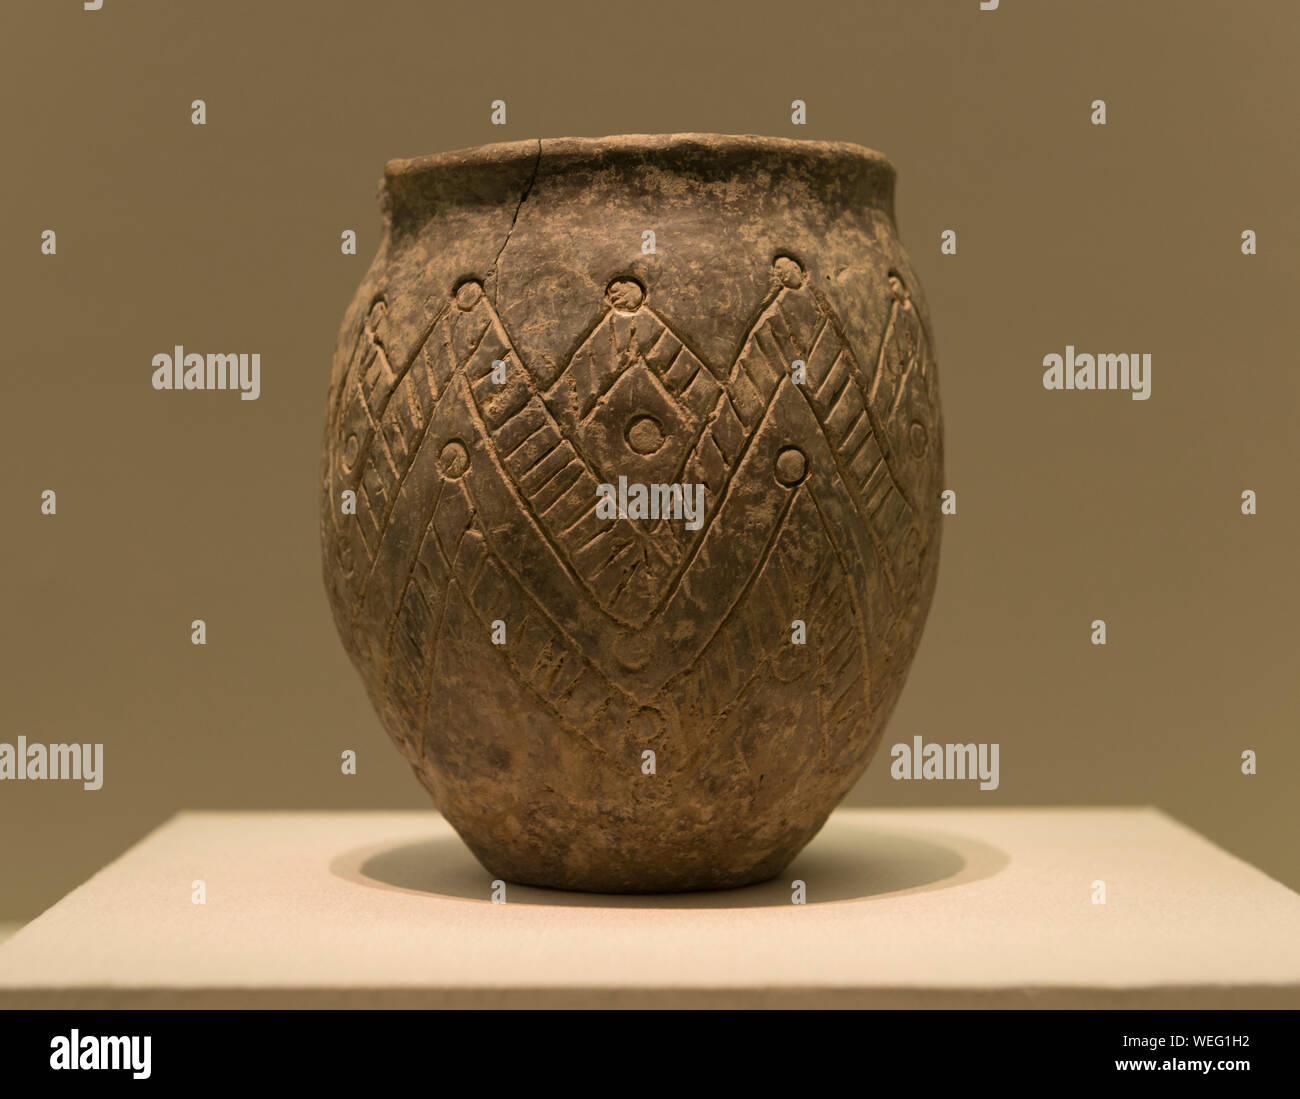 Design pattern géométrique jar. La période des Royaumes combattants (475-221 av. J.-C.) Le Musée de la région autonome Uygur du Xinjiang. Banque D'Images